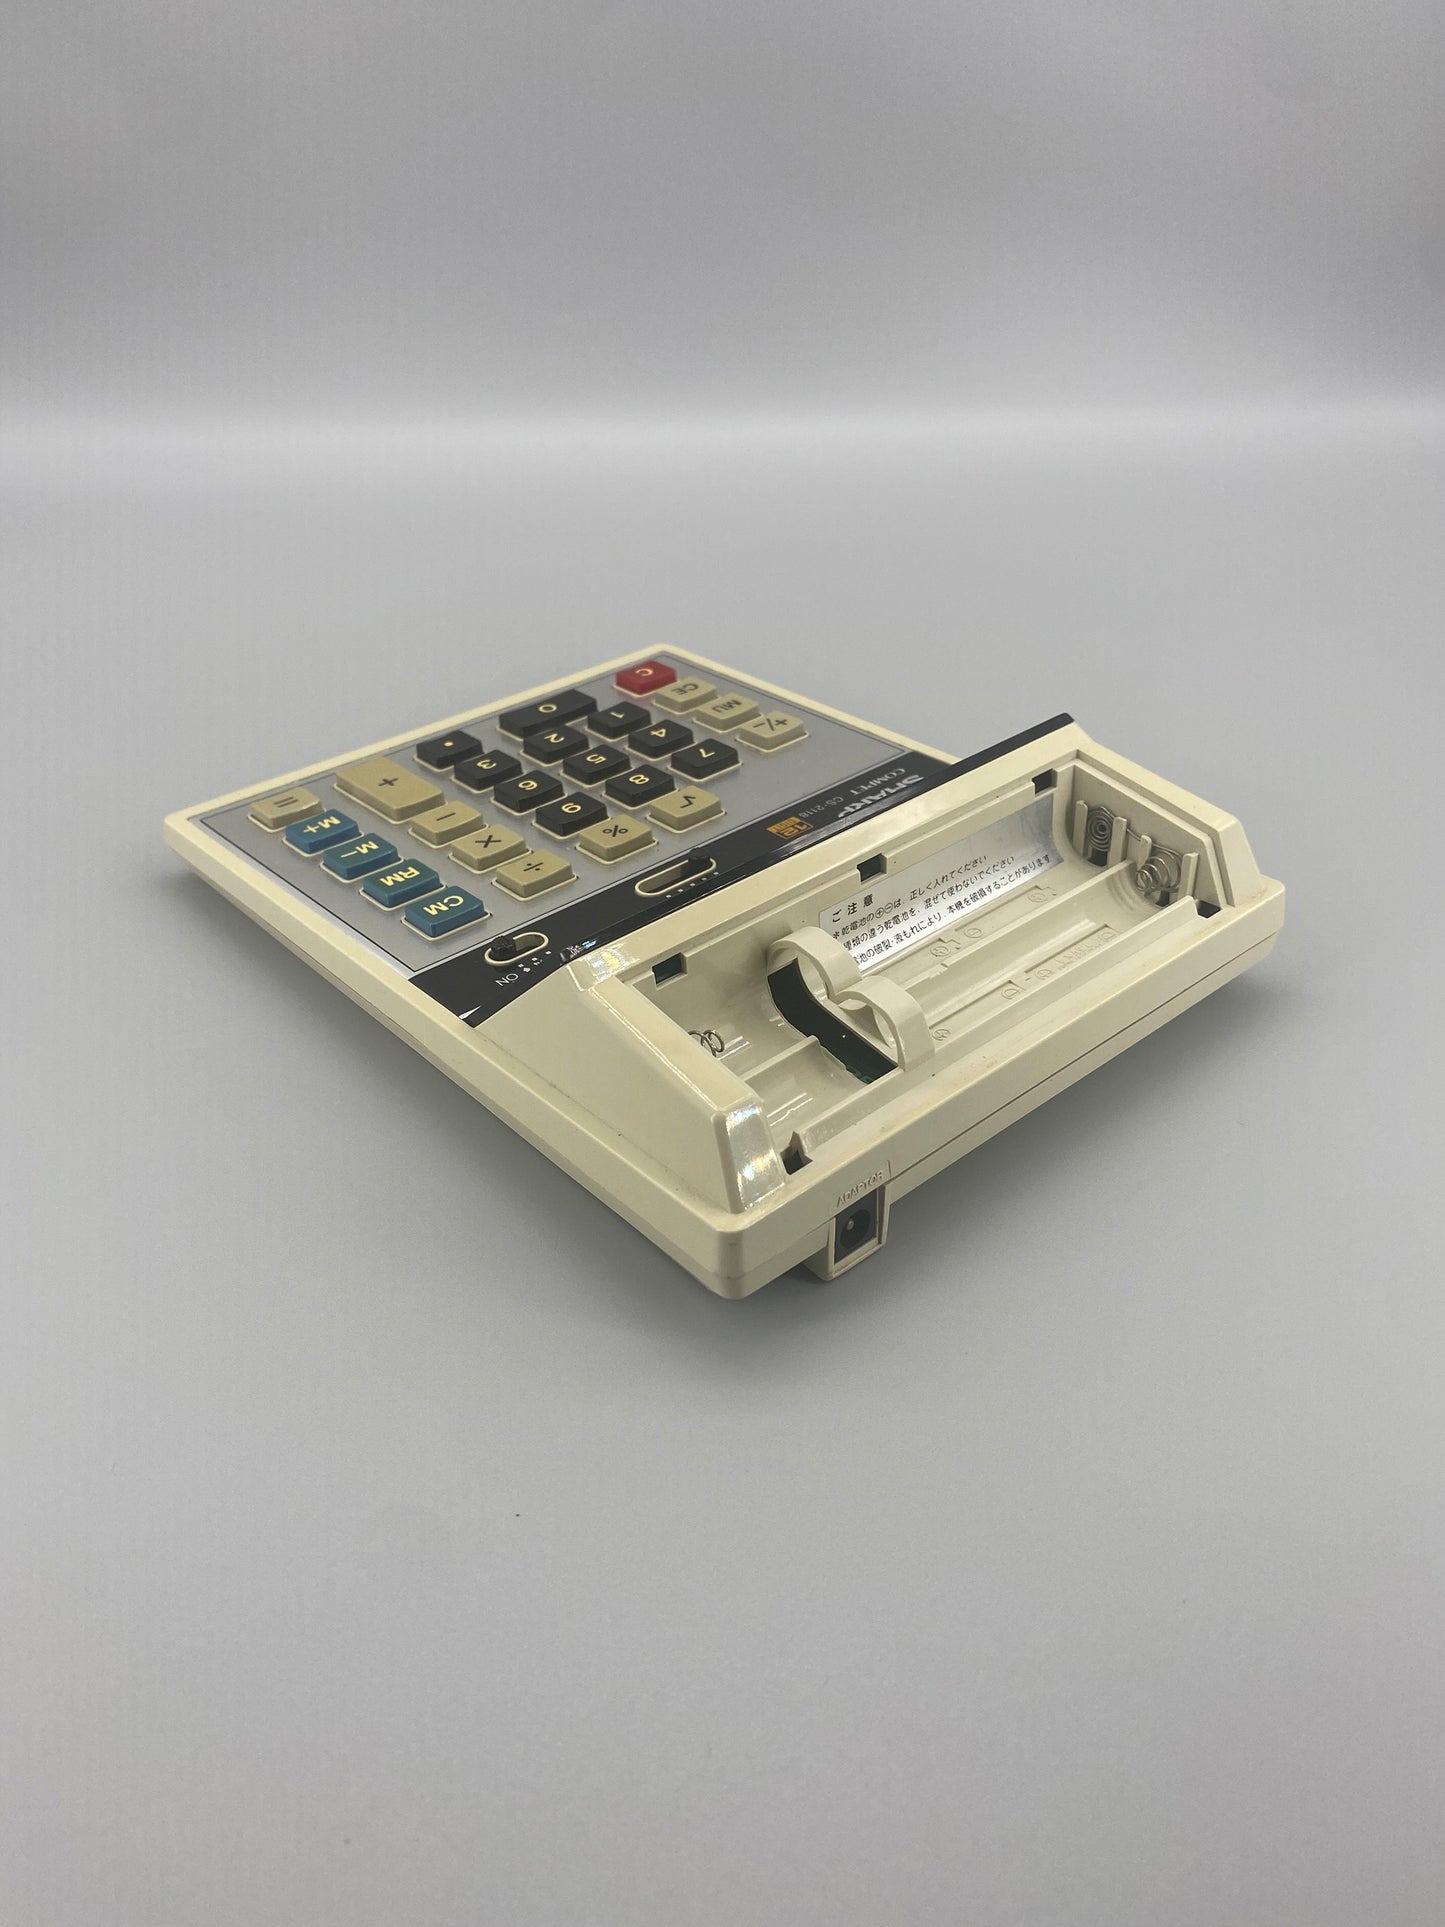 日本制 Sharp Compet CS-2118 VFD Calculator 營光管 計數機 電卓